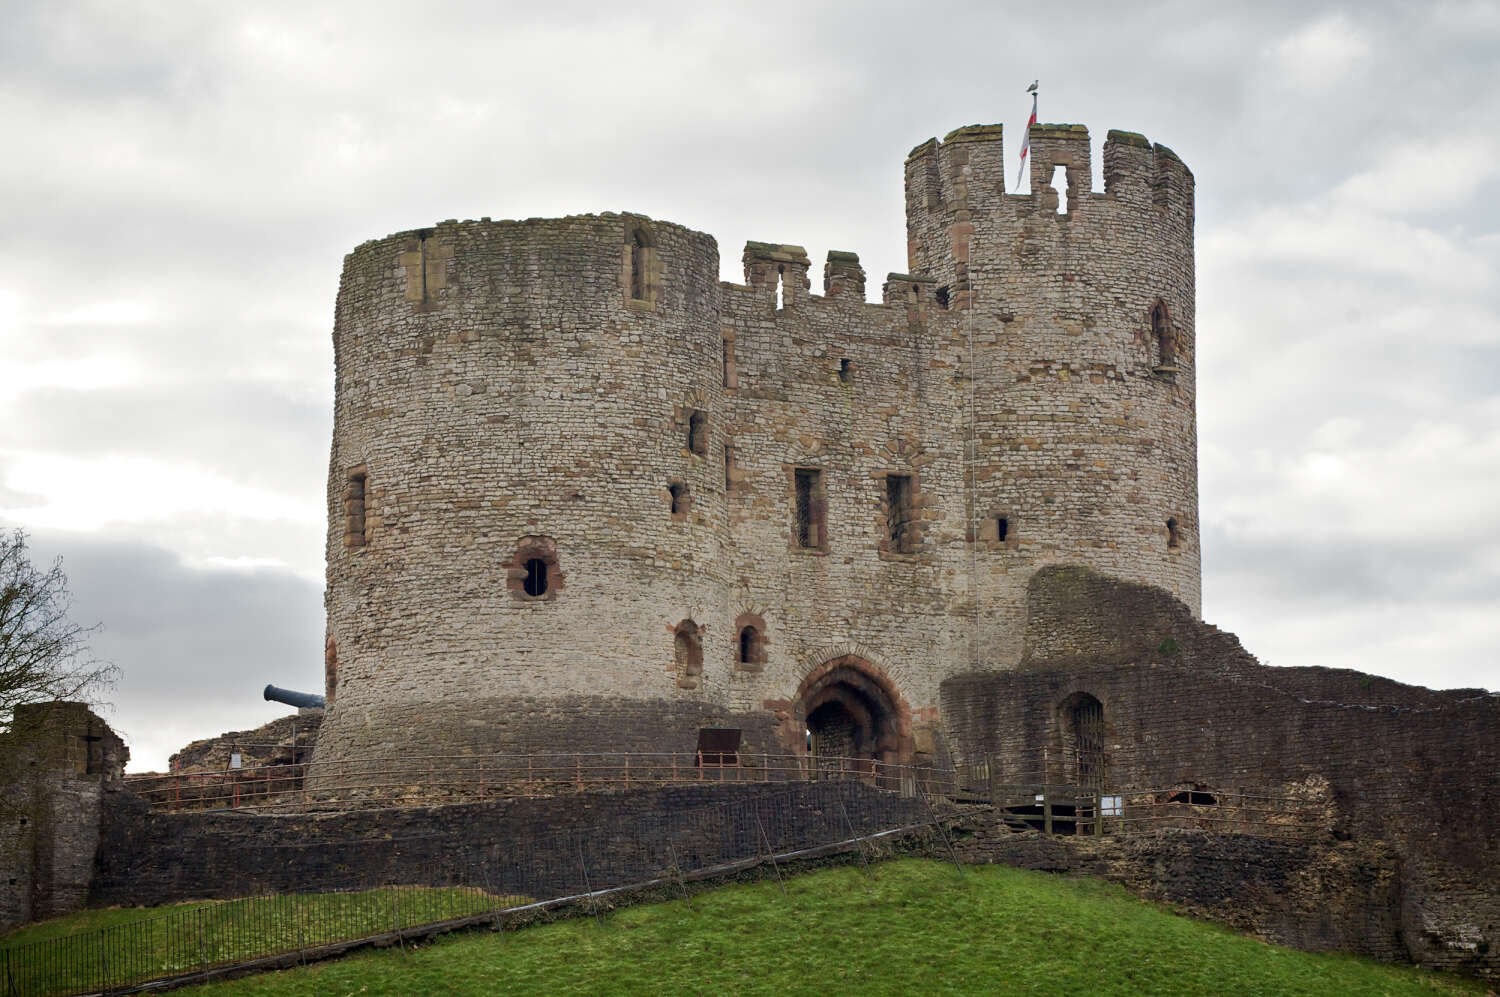 Dudley castle